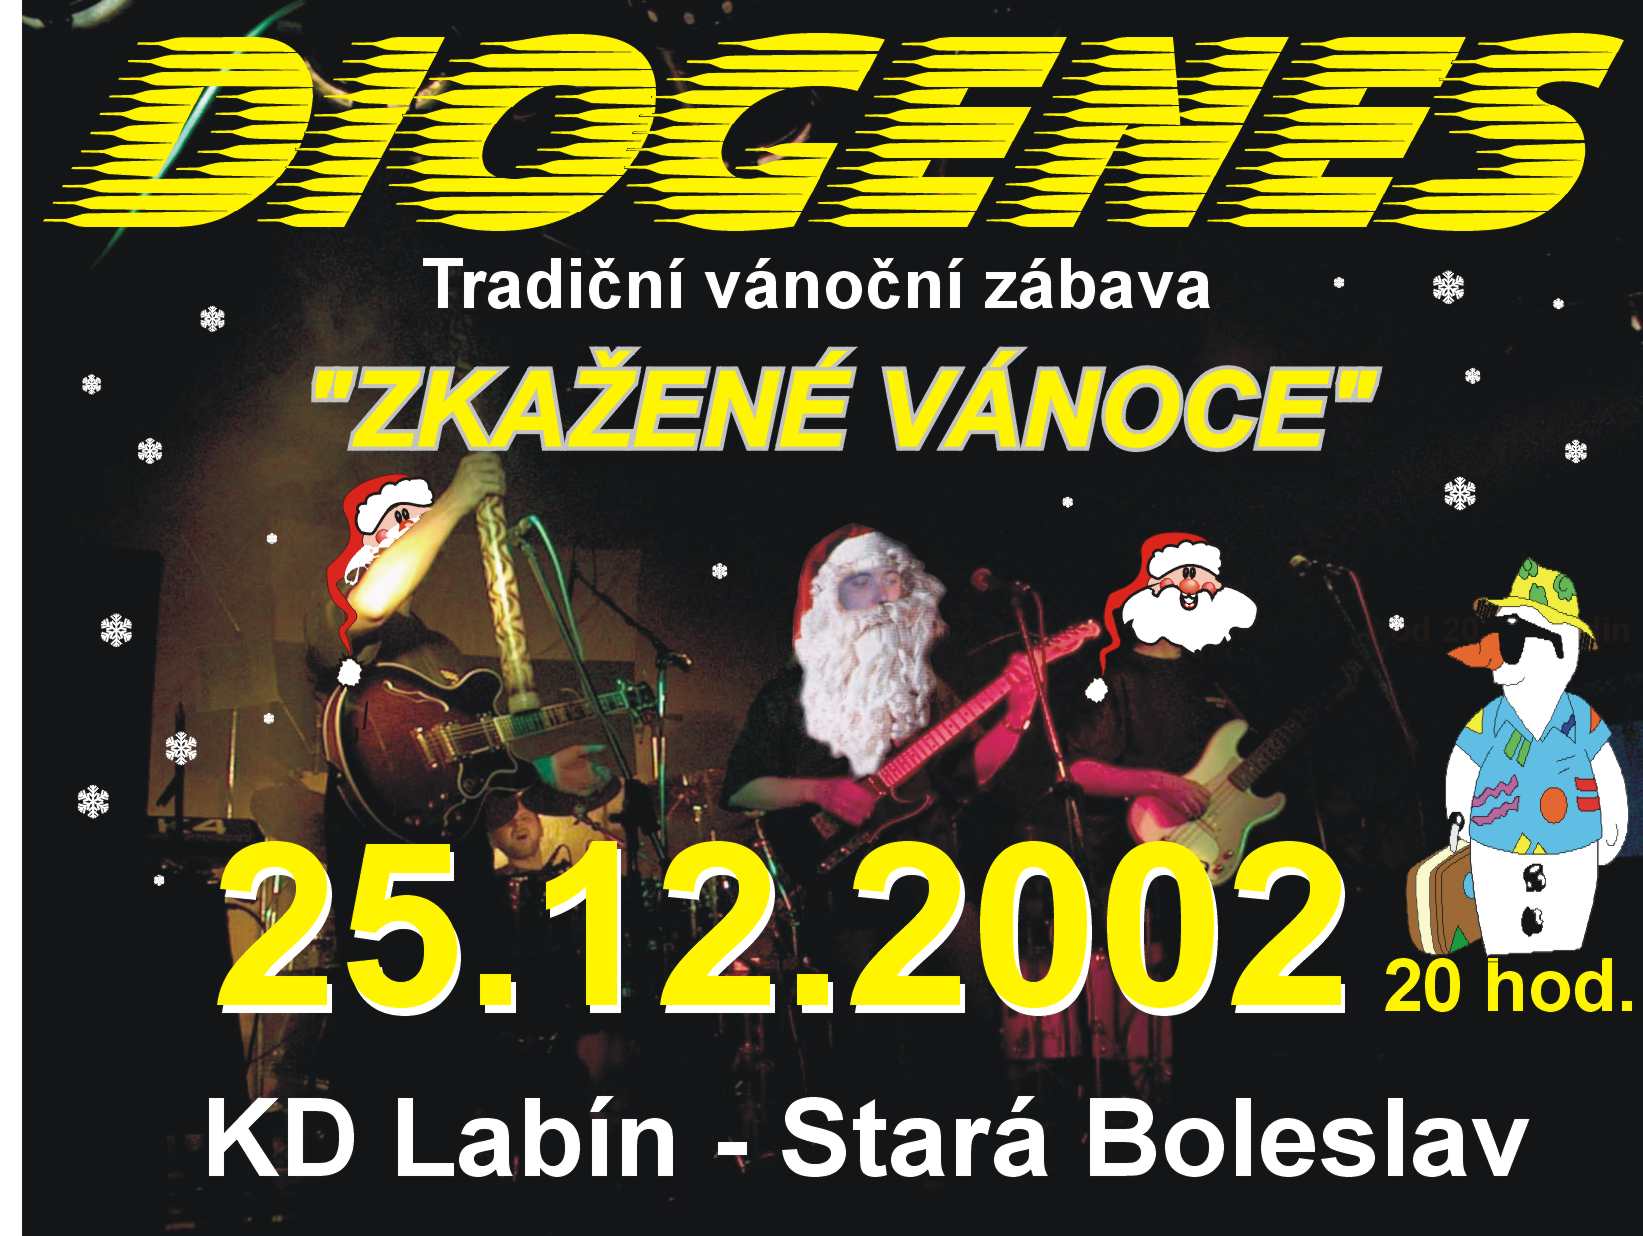 Diogenes -- Vánoce 2002
Plakát na tradiční vánoční zábavu 2002 skupiny Diogenes